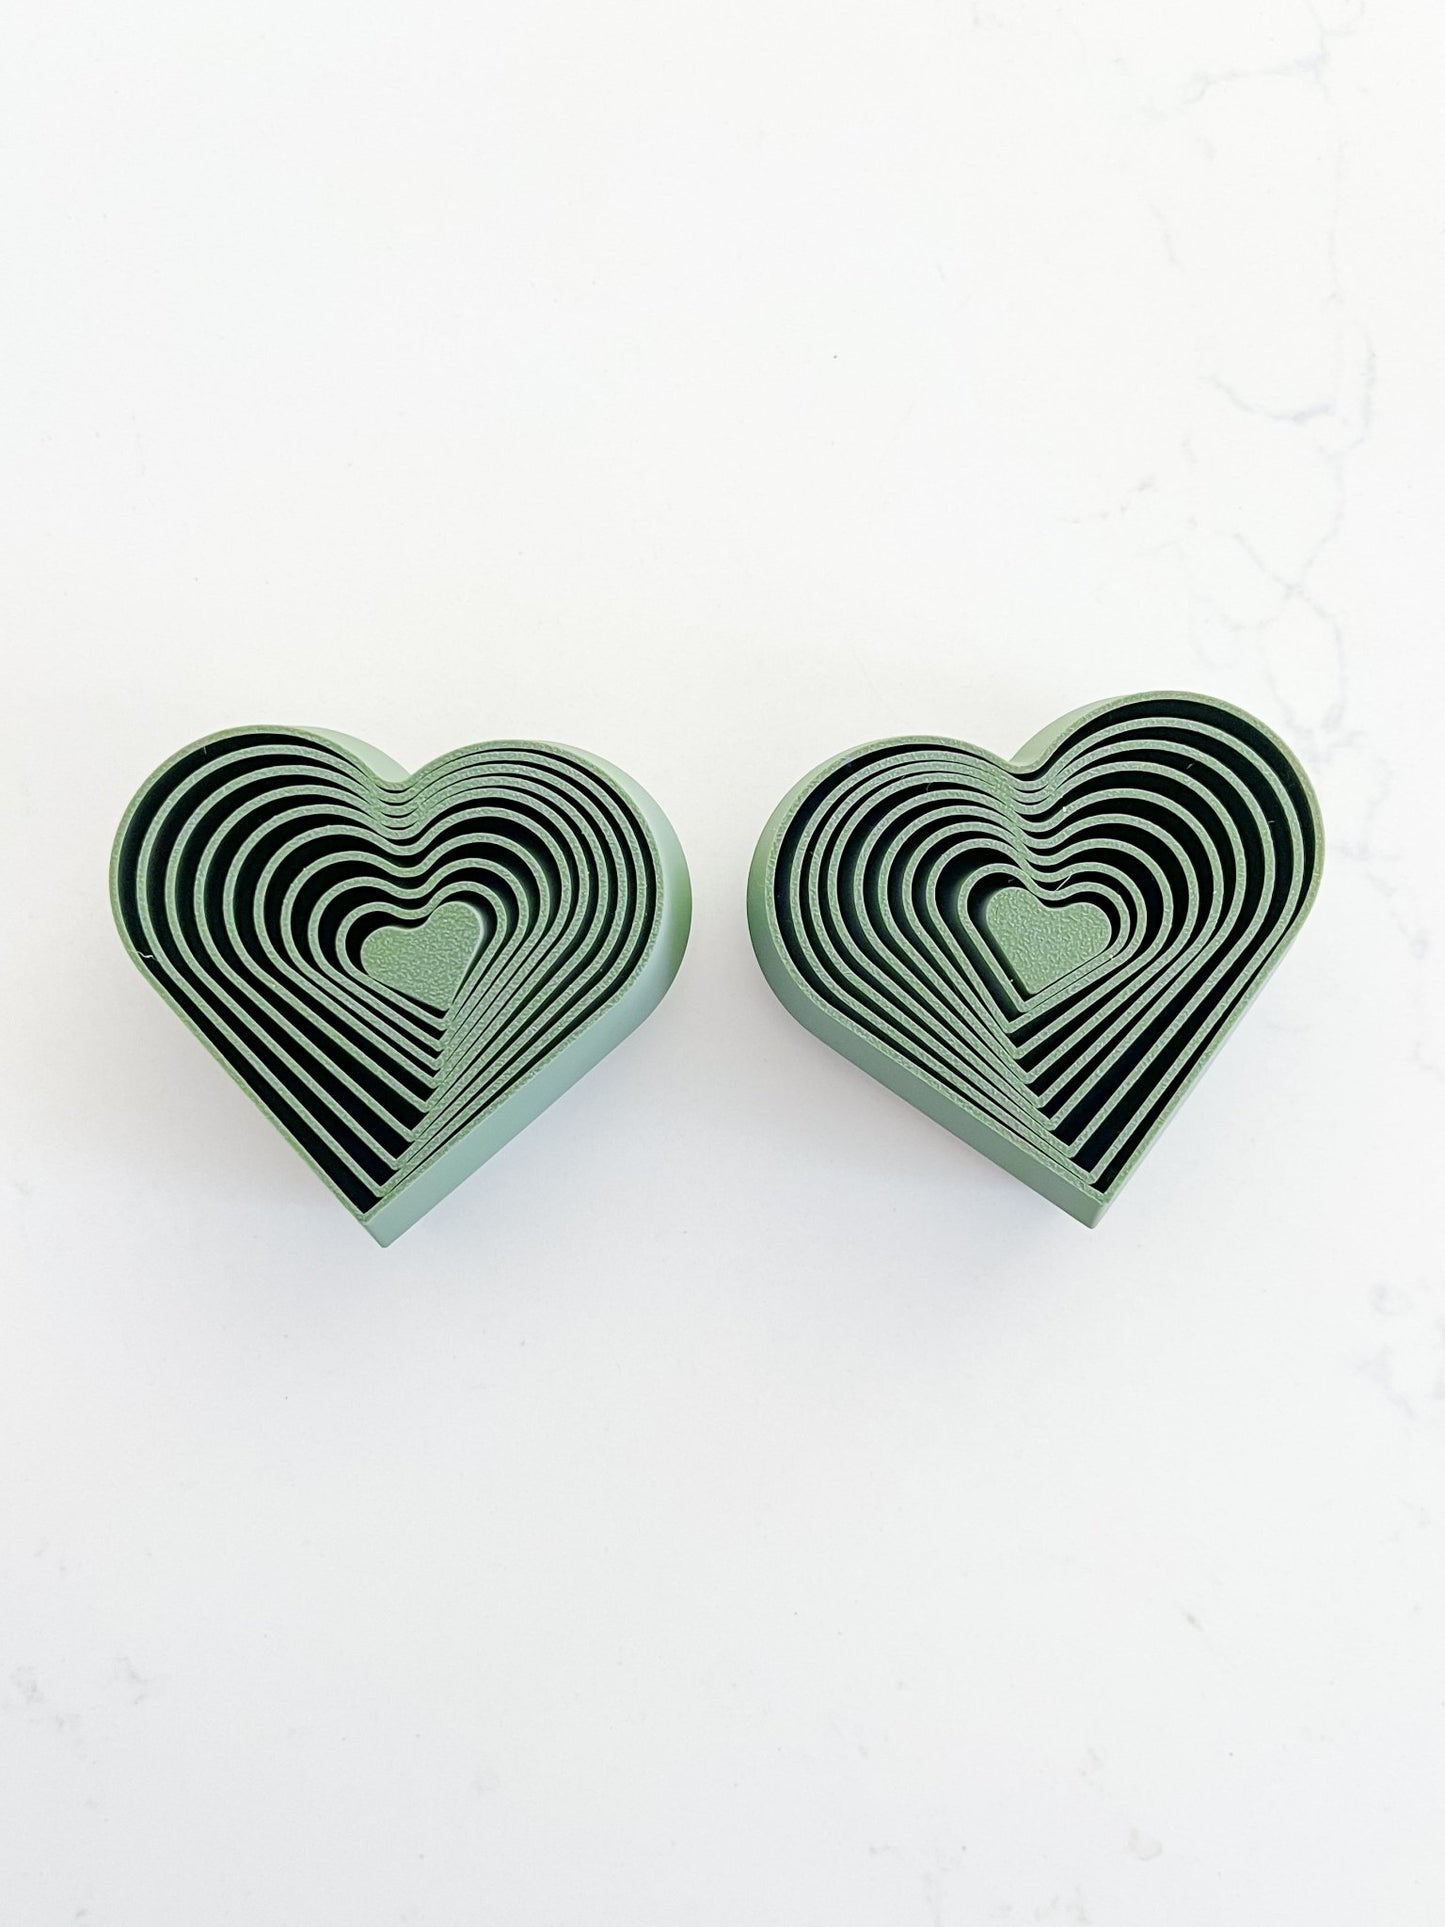 Olive Green Heart Fidgets - Designs by Lauren Ann